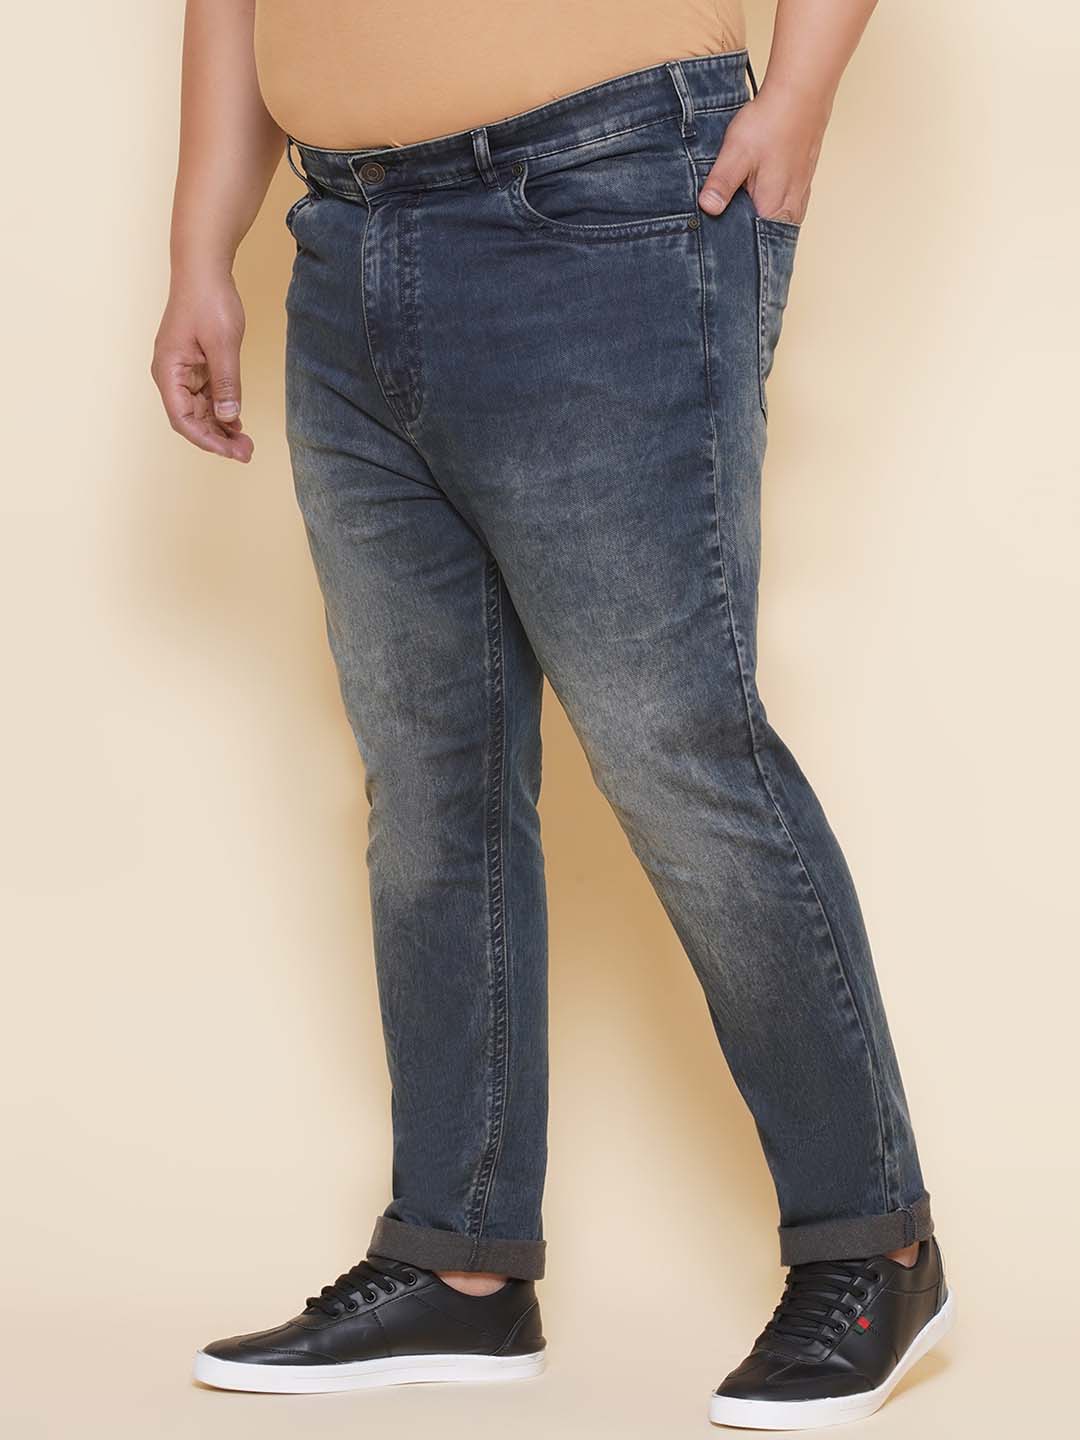 bottomwear/jeans/JPJ12424/jpj12424-4.jpg